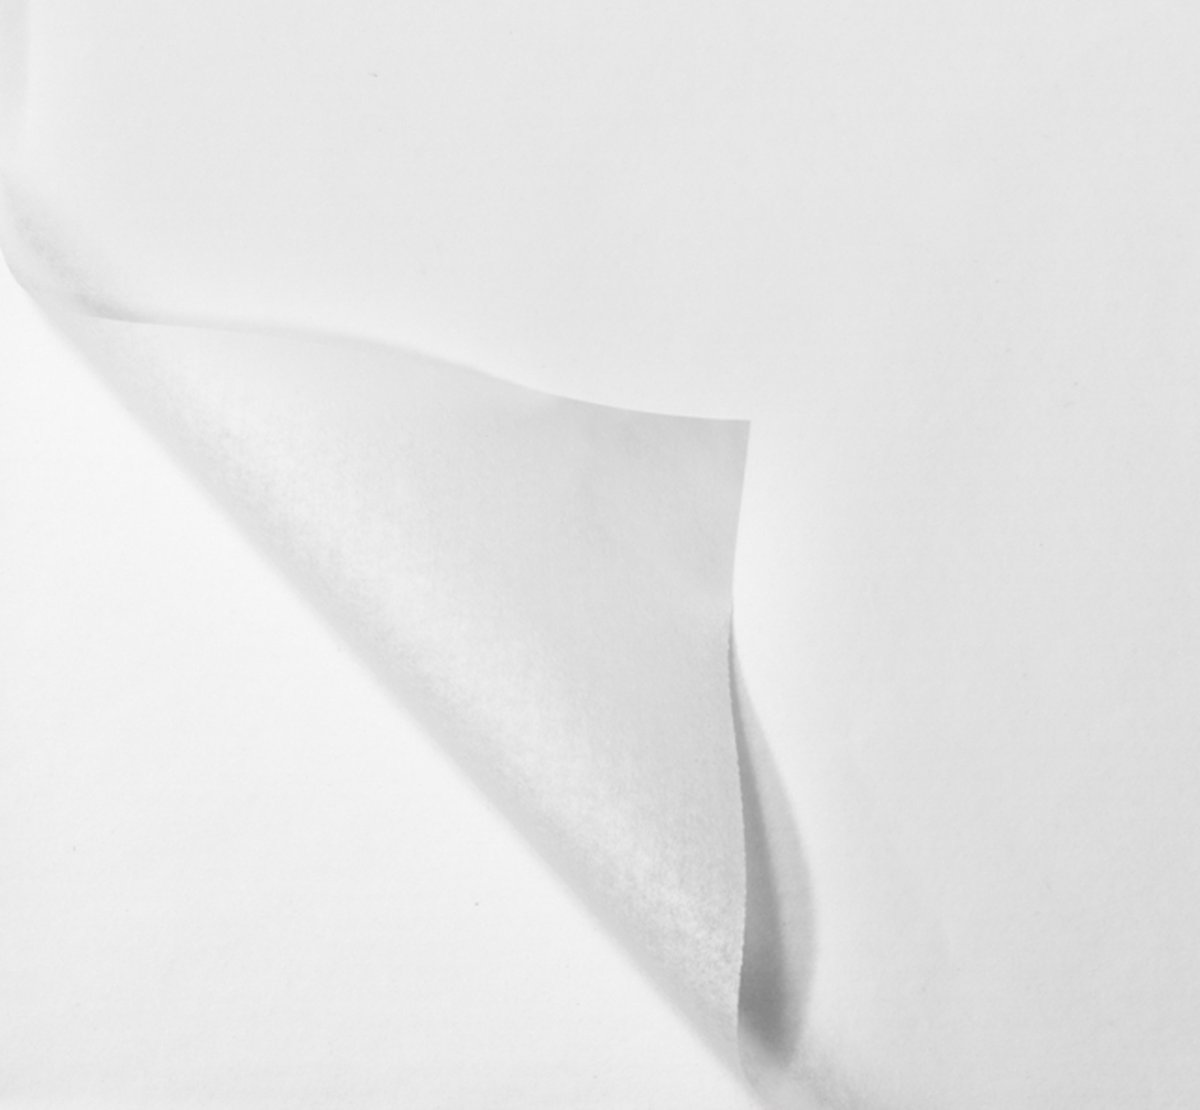 Zijdepapier vloeipapier inpakpapier wit zijdevloei - 50x70 cm 17gr - 100 vellen - Verhuispapier - knutselen - inpakken en beschermen - KlikA